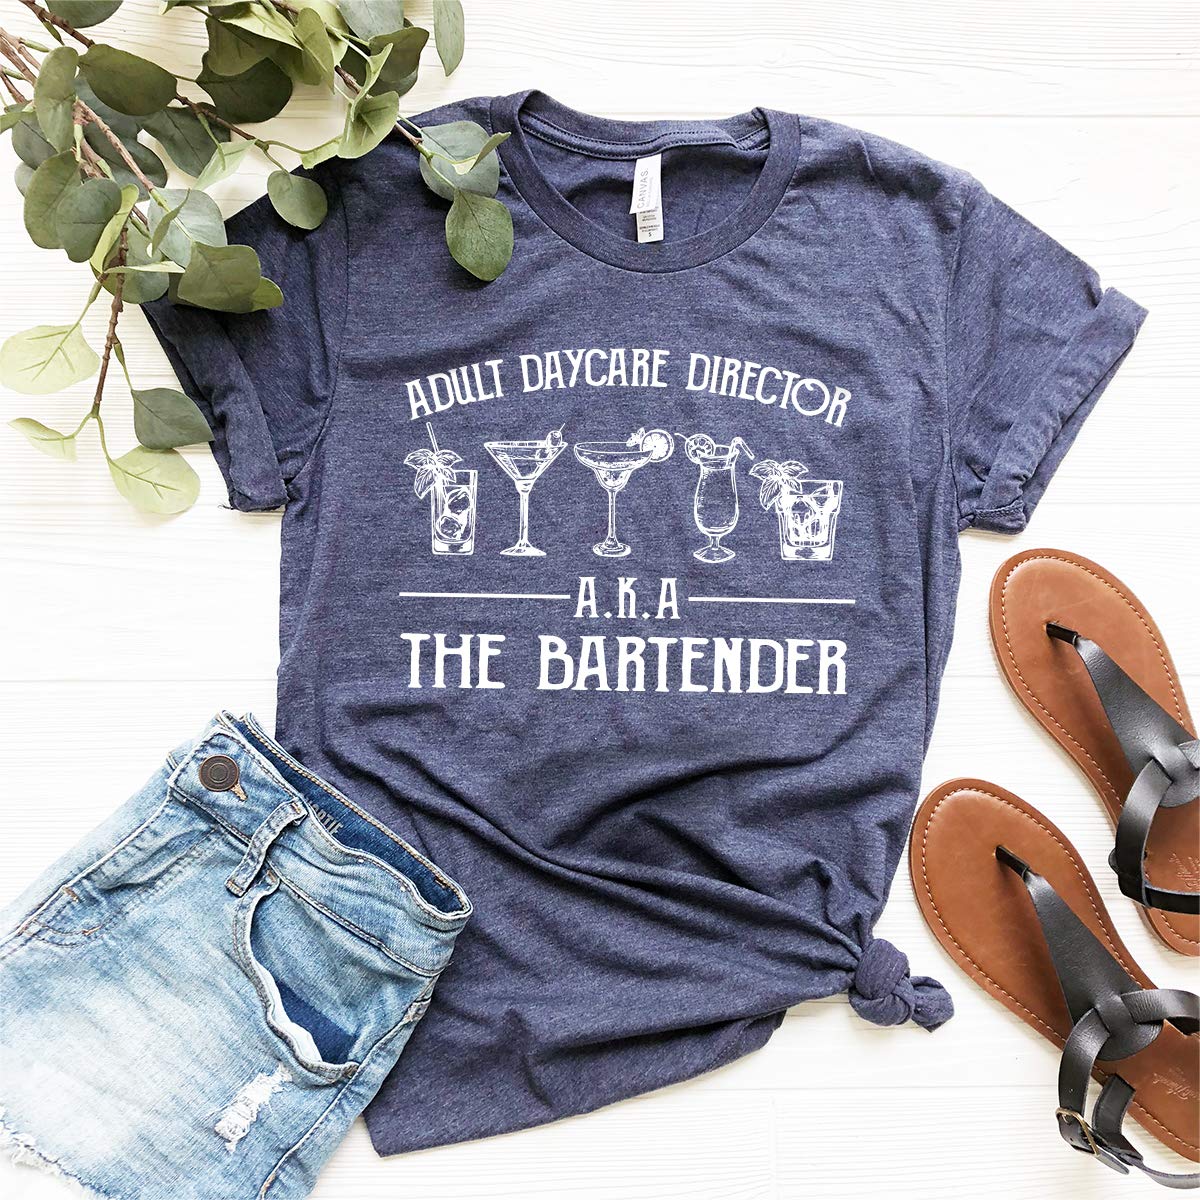 Funny Bartending T-Shirt, Bartender Shirt, Bartender Gift, Barista Shirt, Barmen Tee, Adult Daycare Director A.K.A The Bartender T Shirt